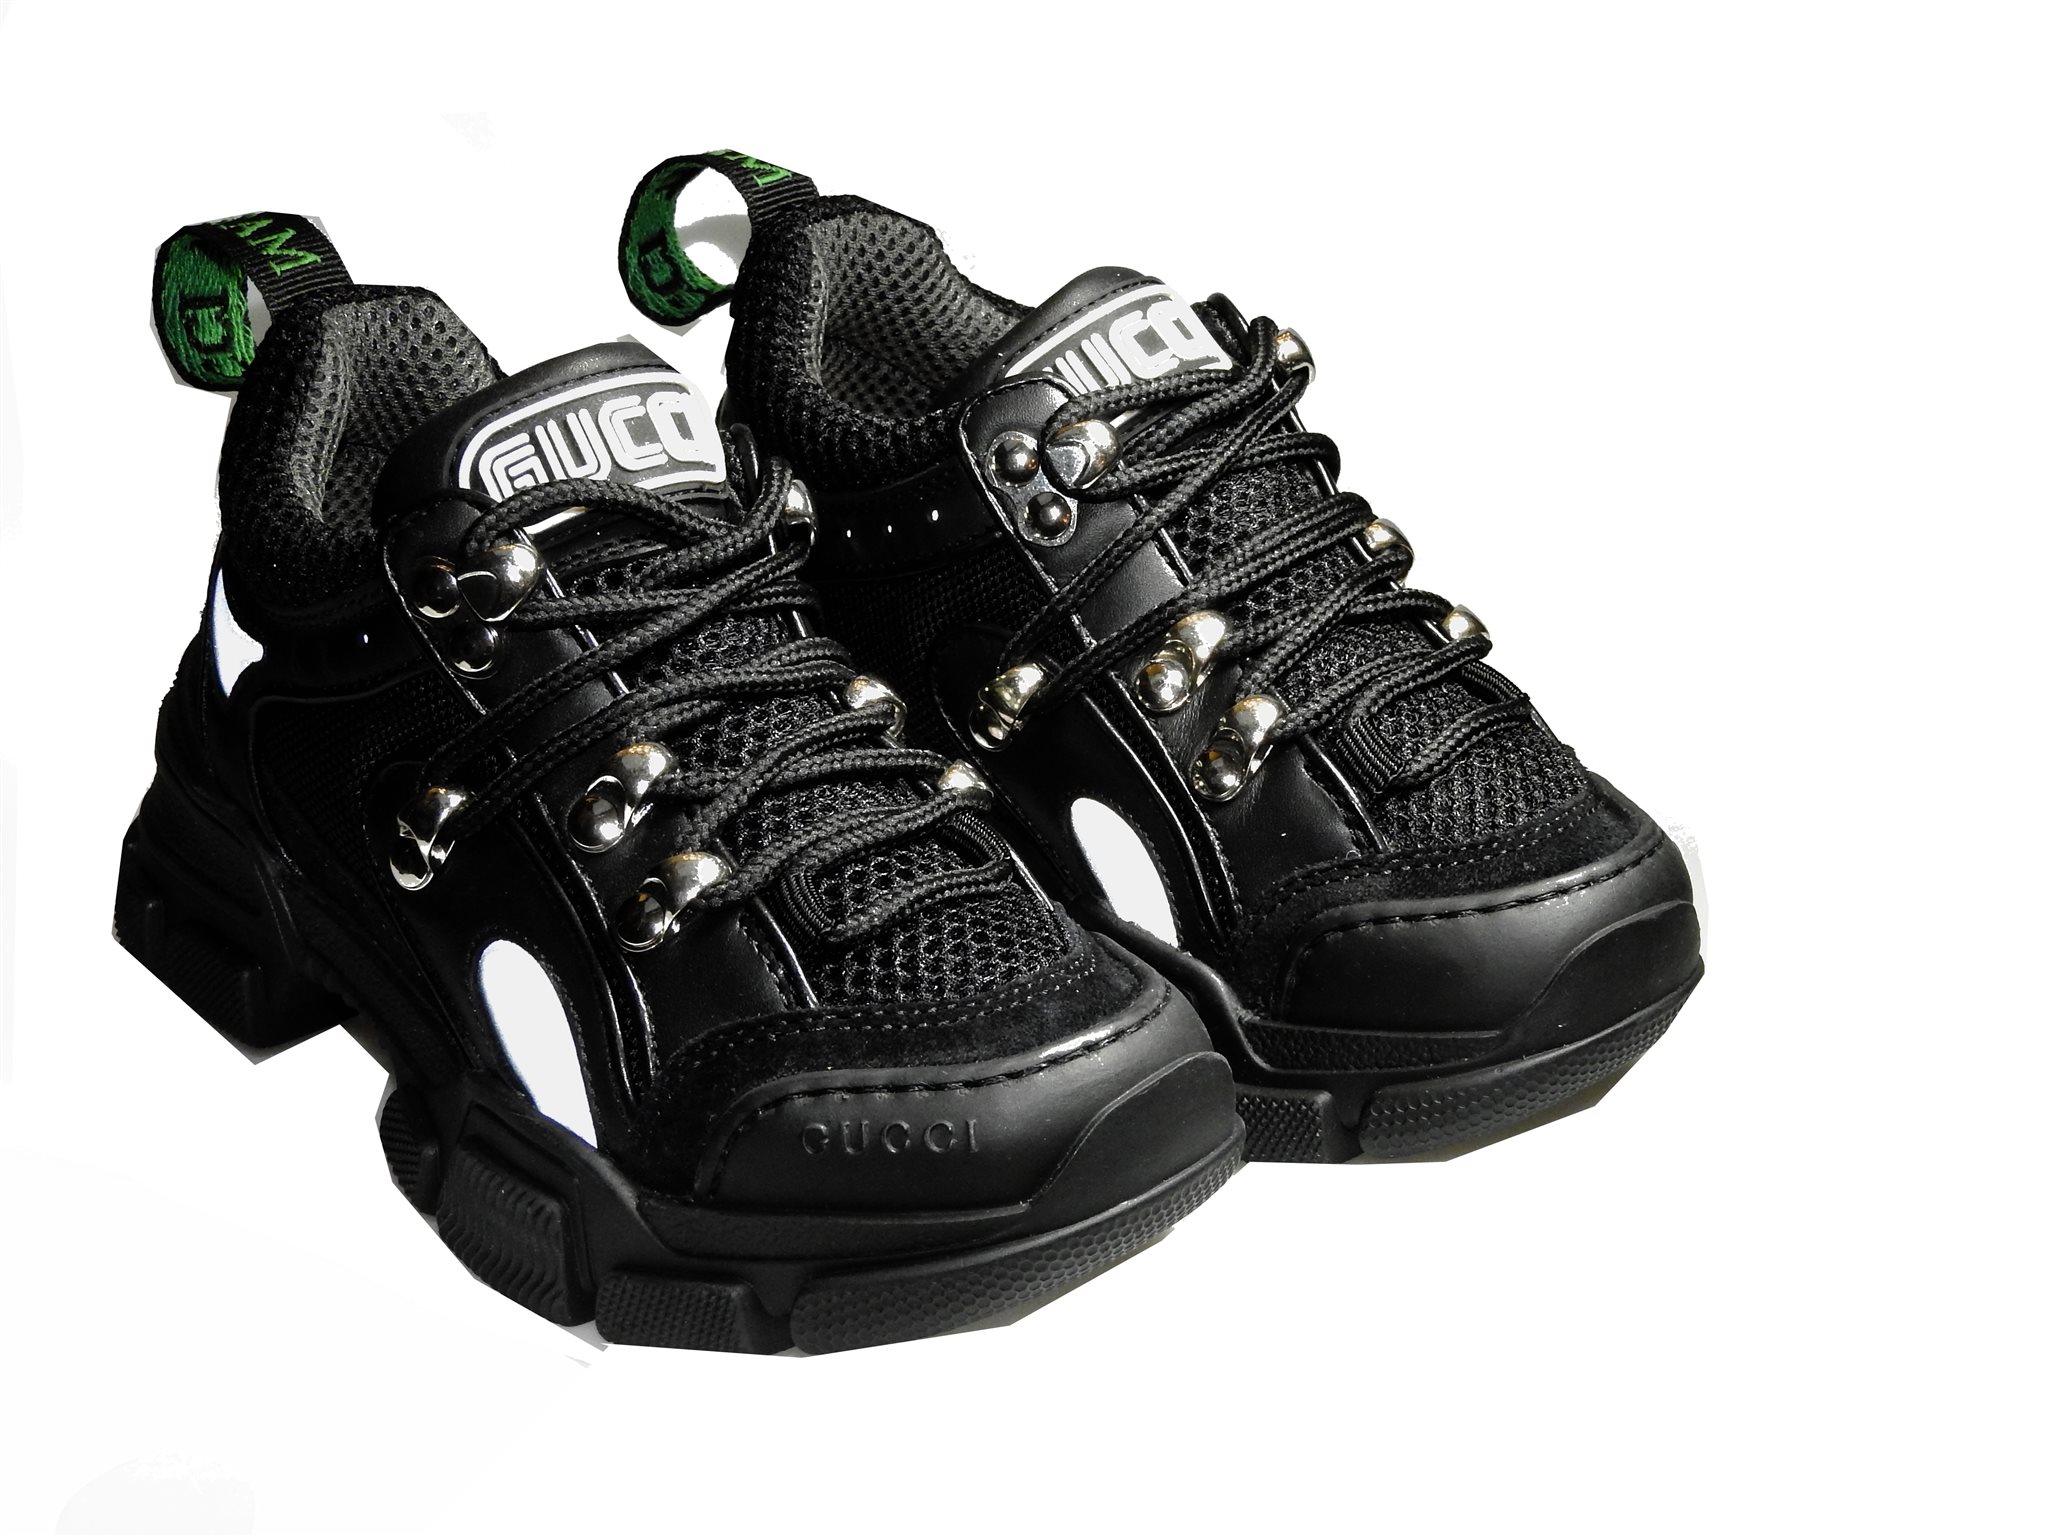 Onnodig adverteren veel plezier Producten - Gucci chunky sneaker zwart - La Boite - Kids fashion & shoes